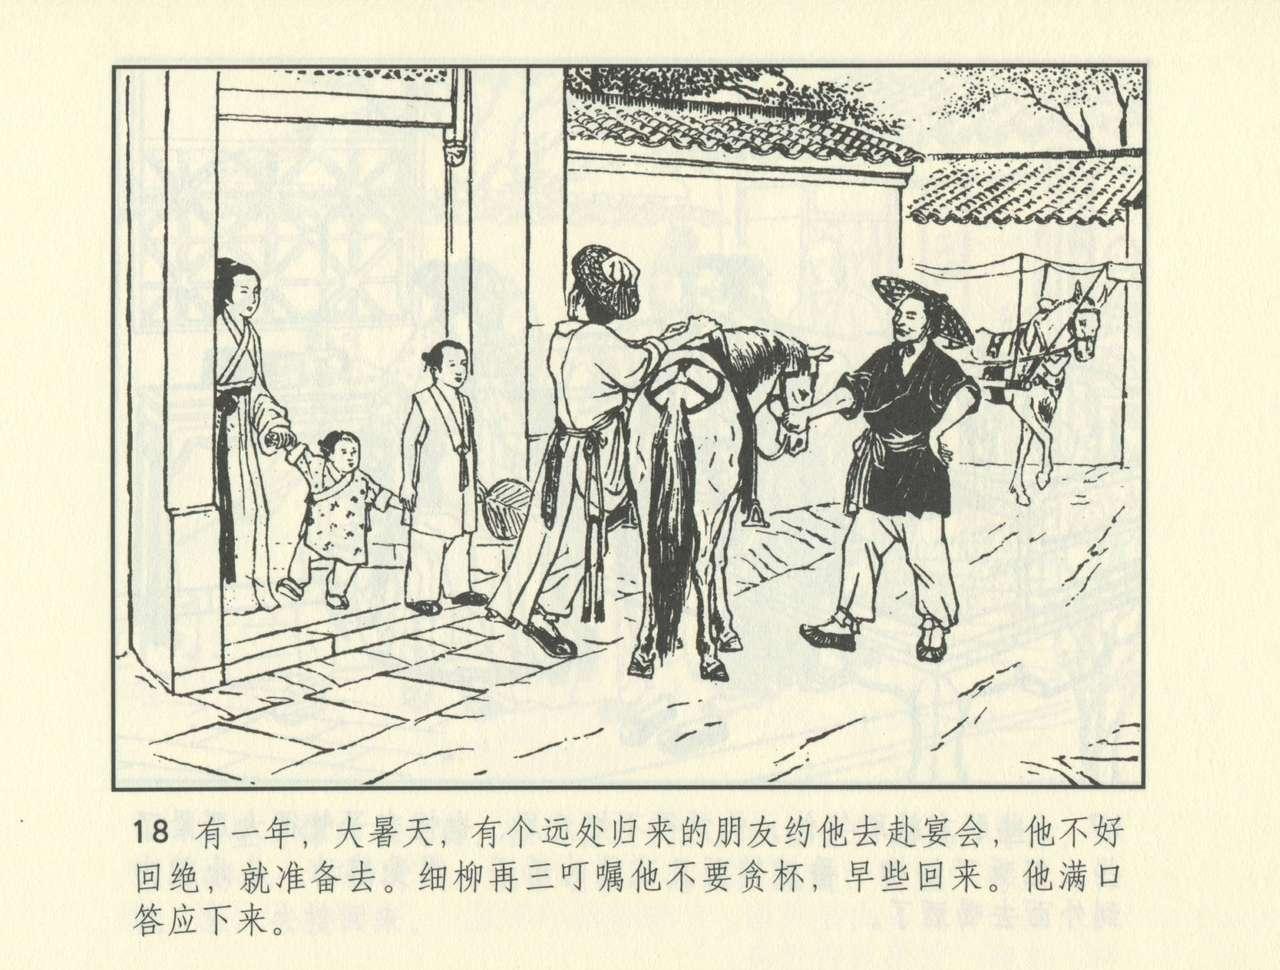 聊斋志异 张玮等绘 天津人民美术出版社 卷二十一 ~ 三十 490